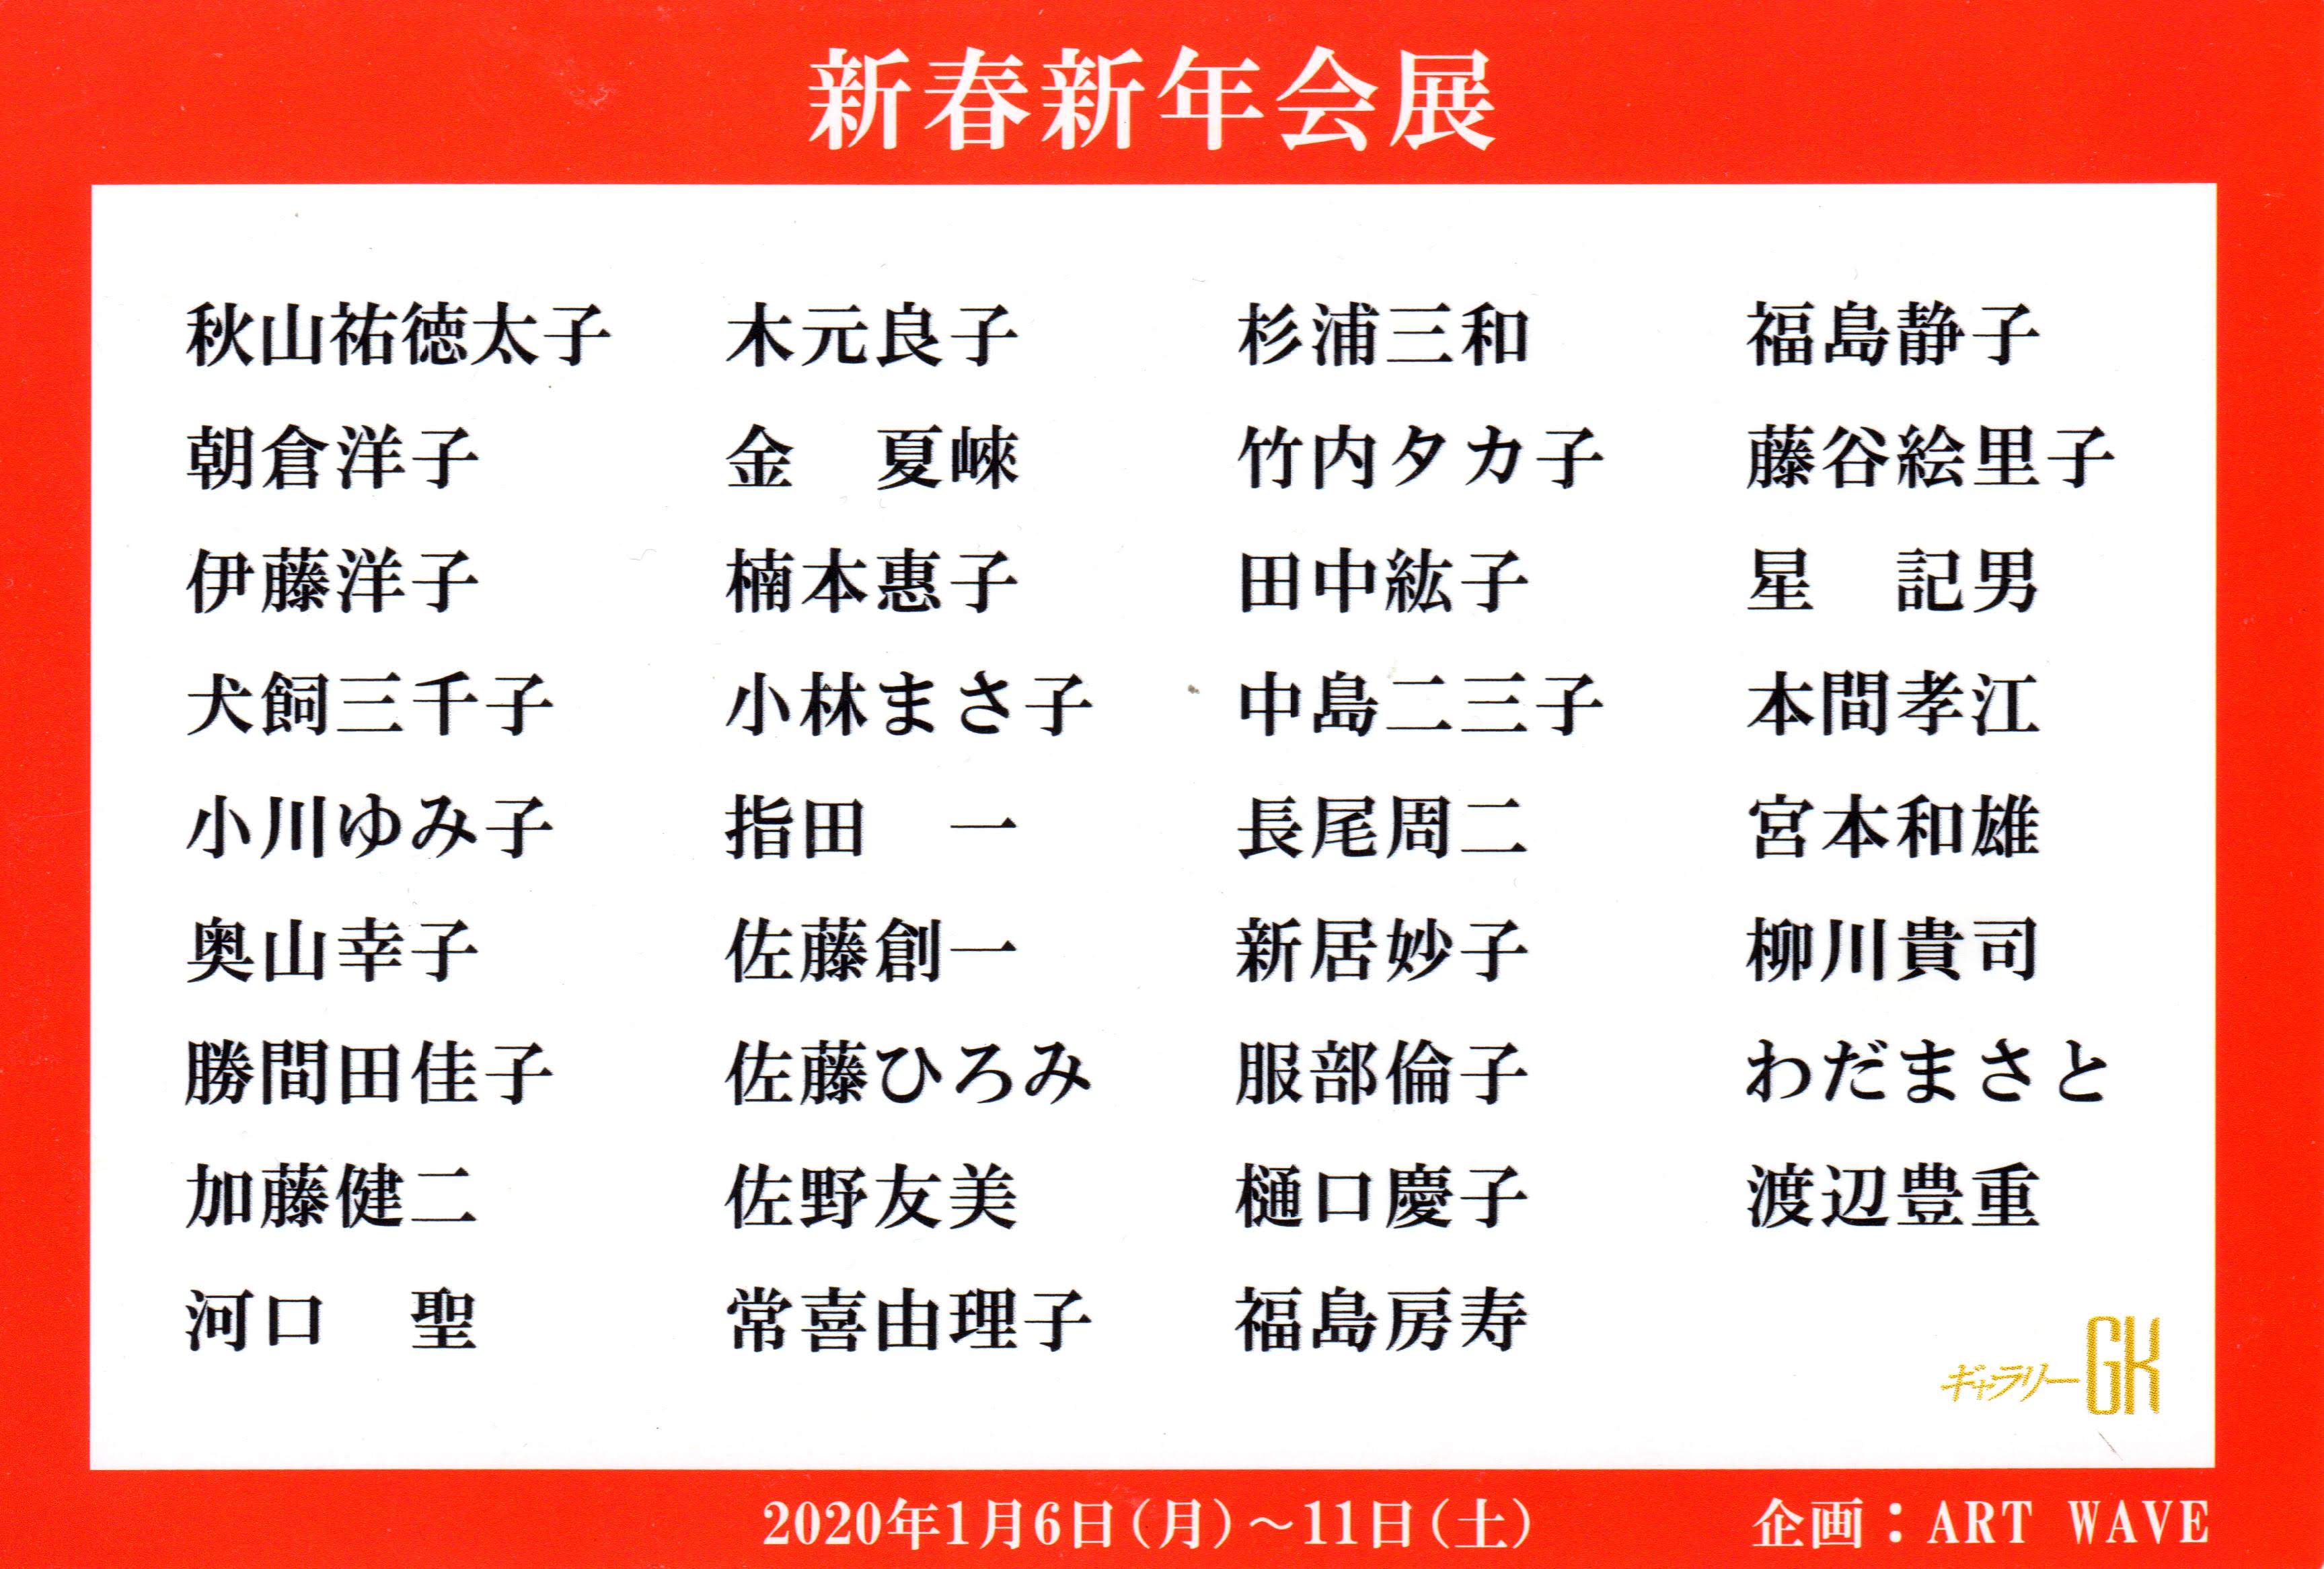 「新春新年会展」。伊藤 洋子 も出品。ギャラリーGK にて。(2020/01/06 月 - 2020/01/11 土)